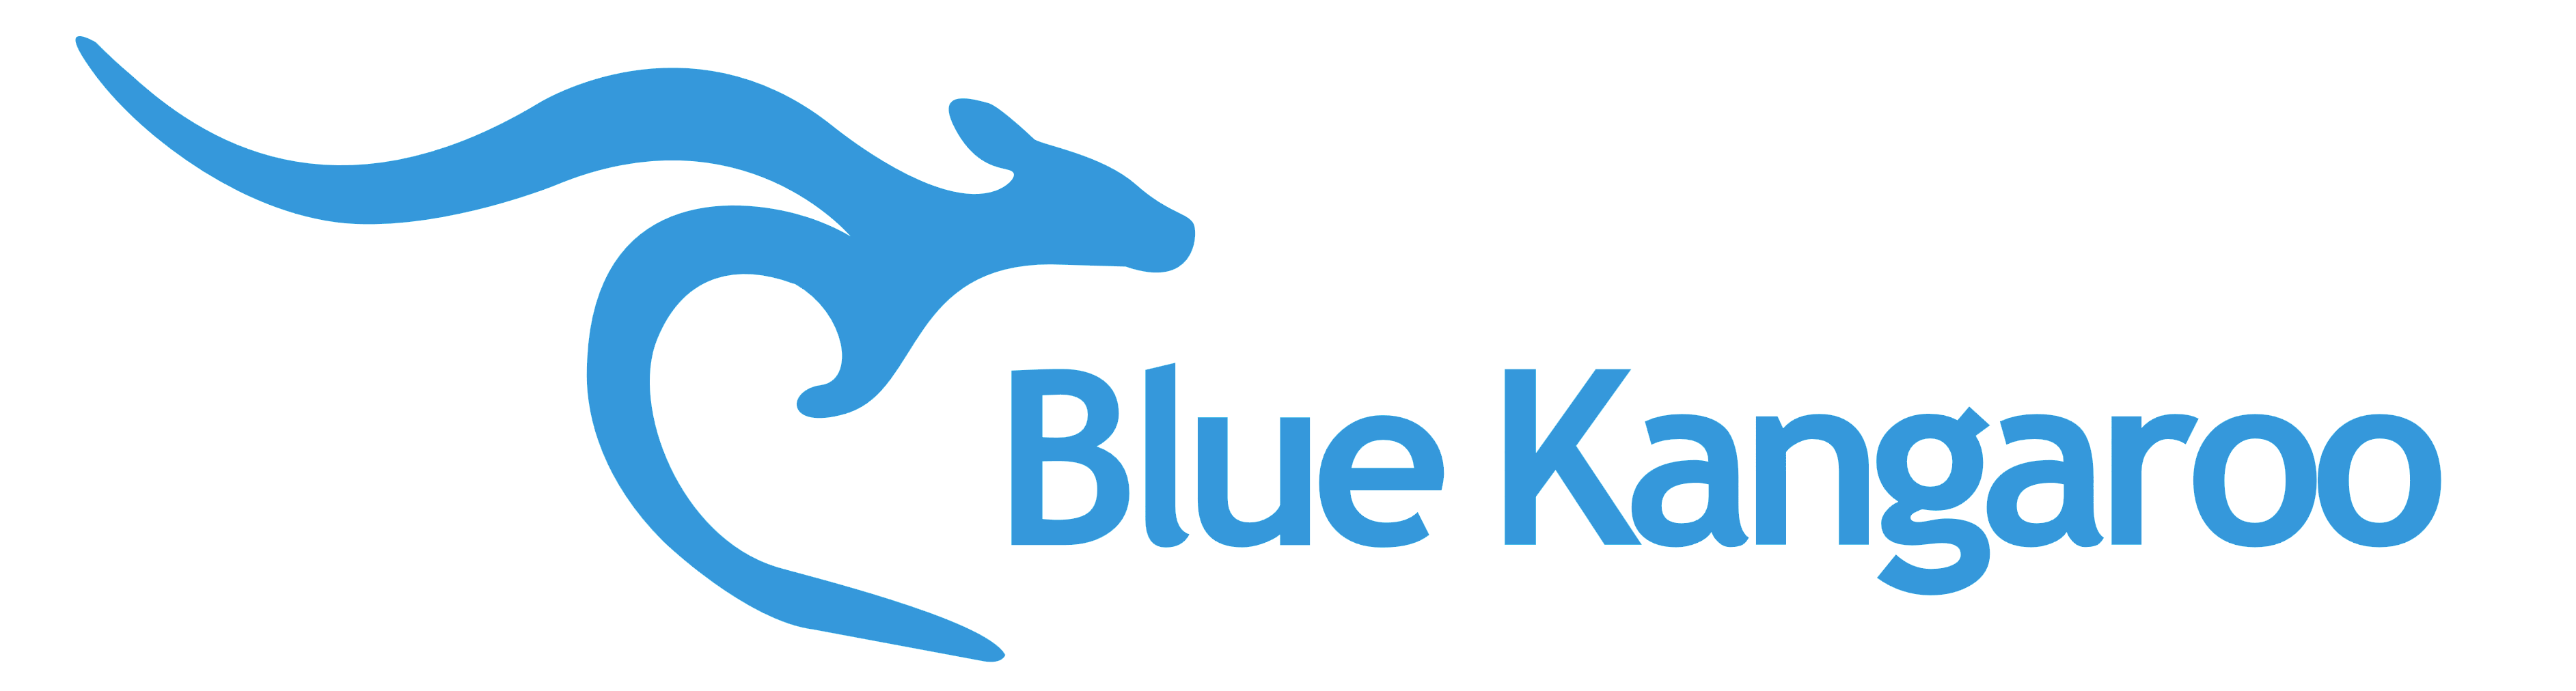 Blue Kangaroo Logo - Blue Kangaroo